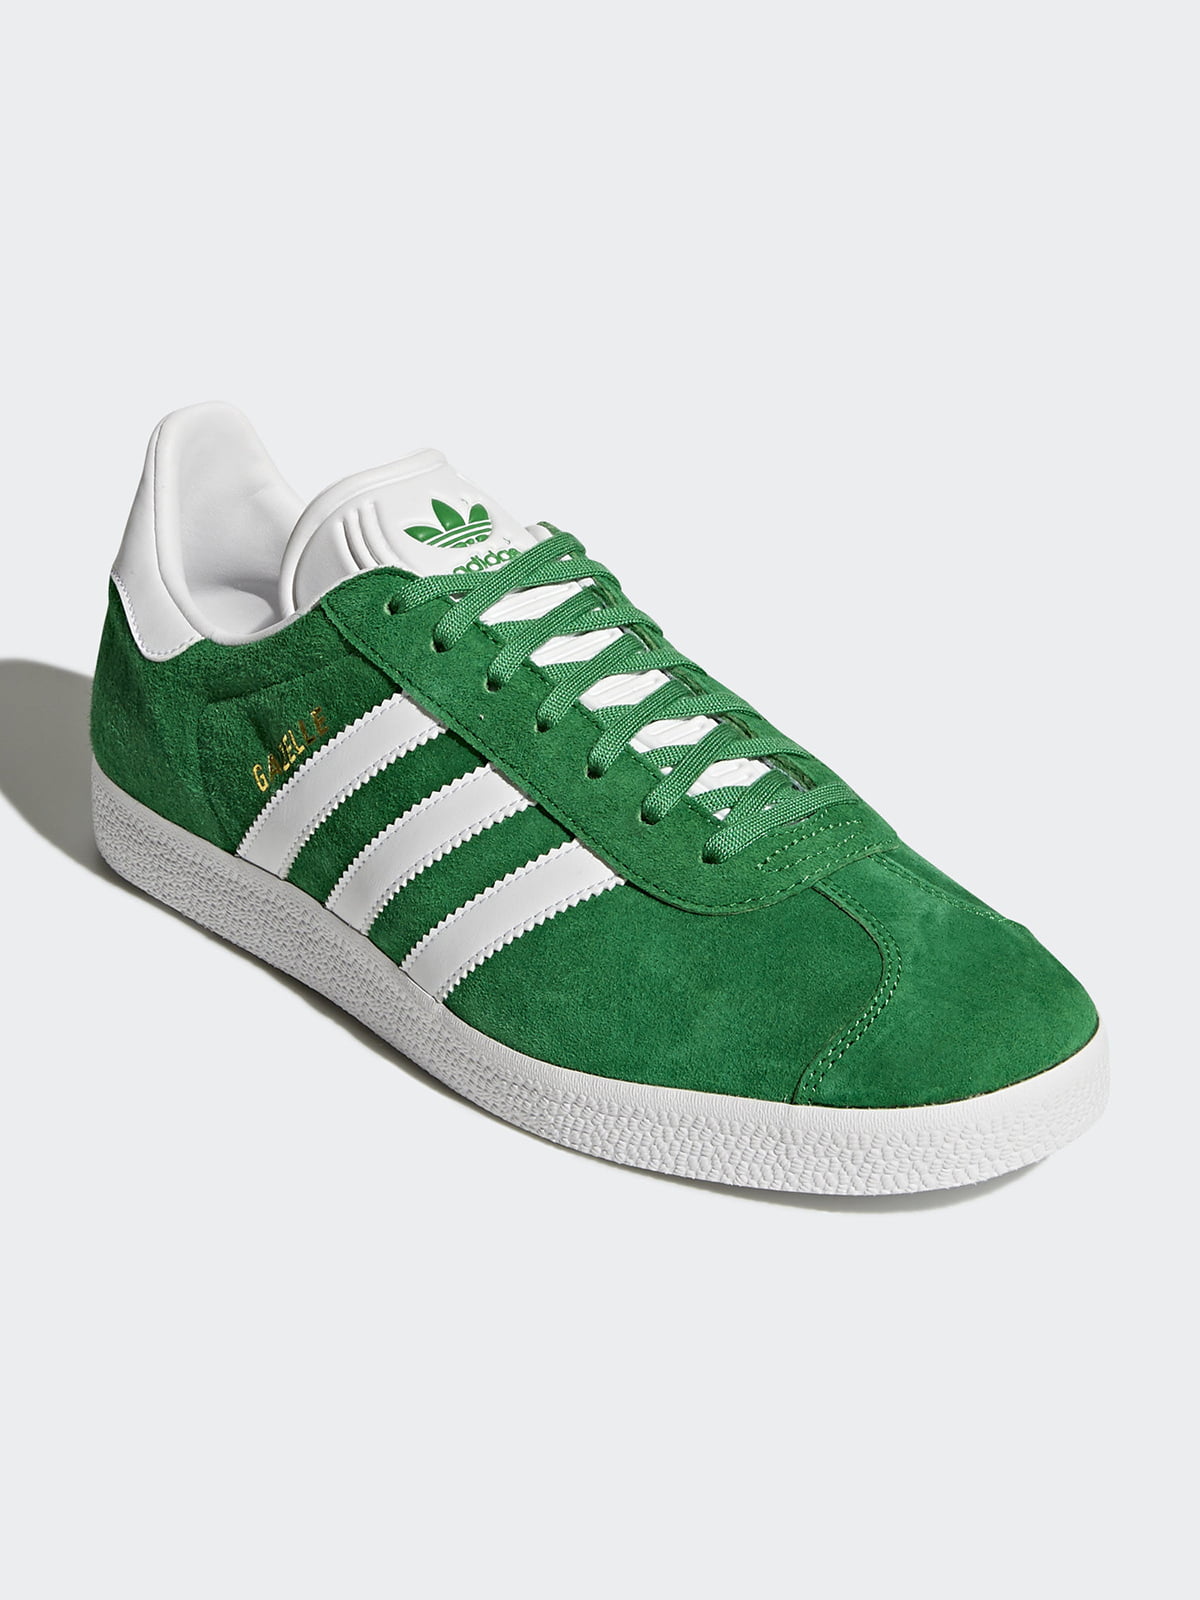 Зеленые кроссовки adidas. Кроссовки adidas Gazelle Green. Adidas Gazelle зеленые. Adidas Gazelle Green Original. Adidas кеды Gazelle зеленый.